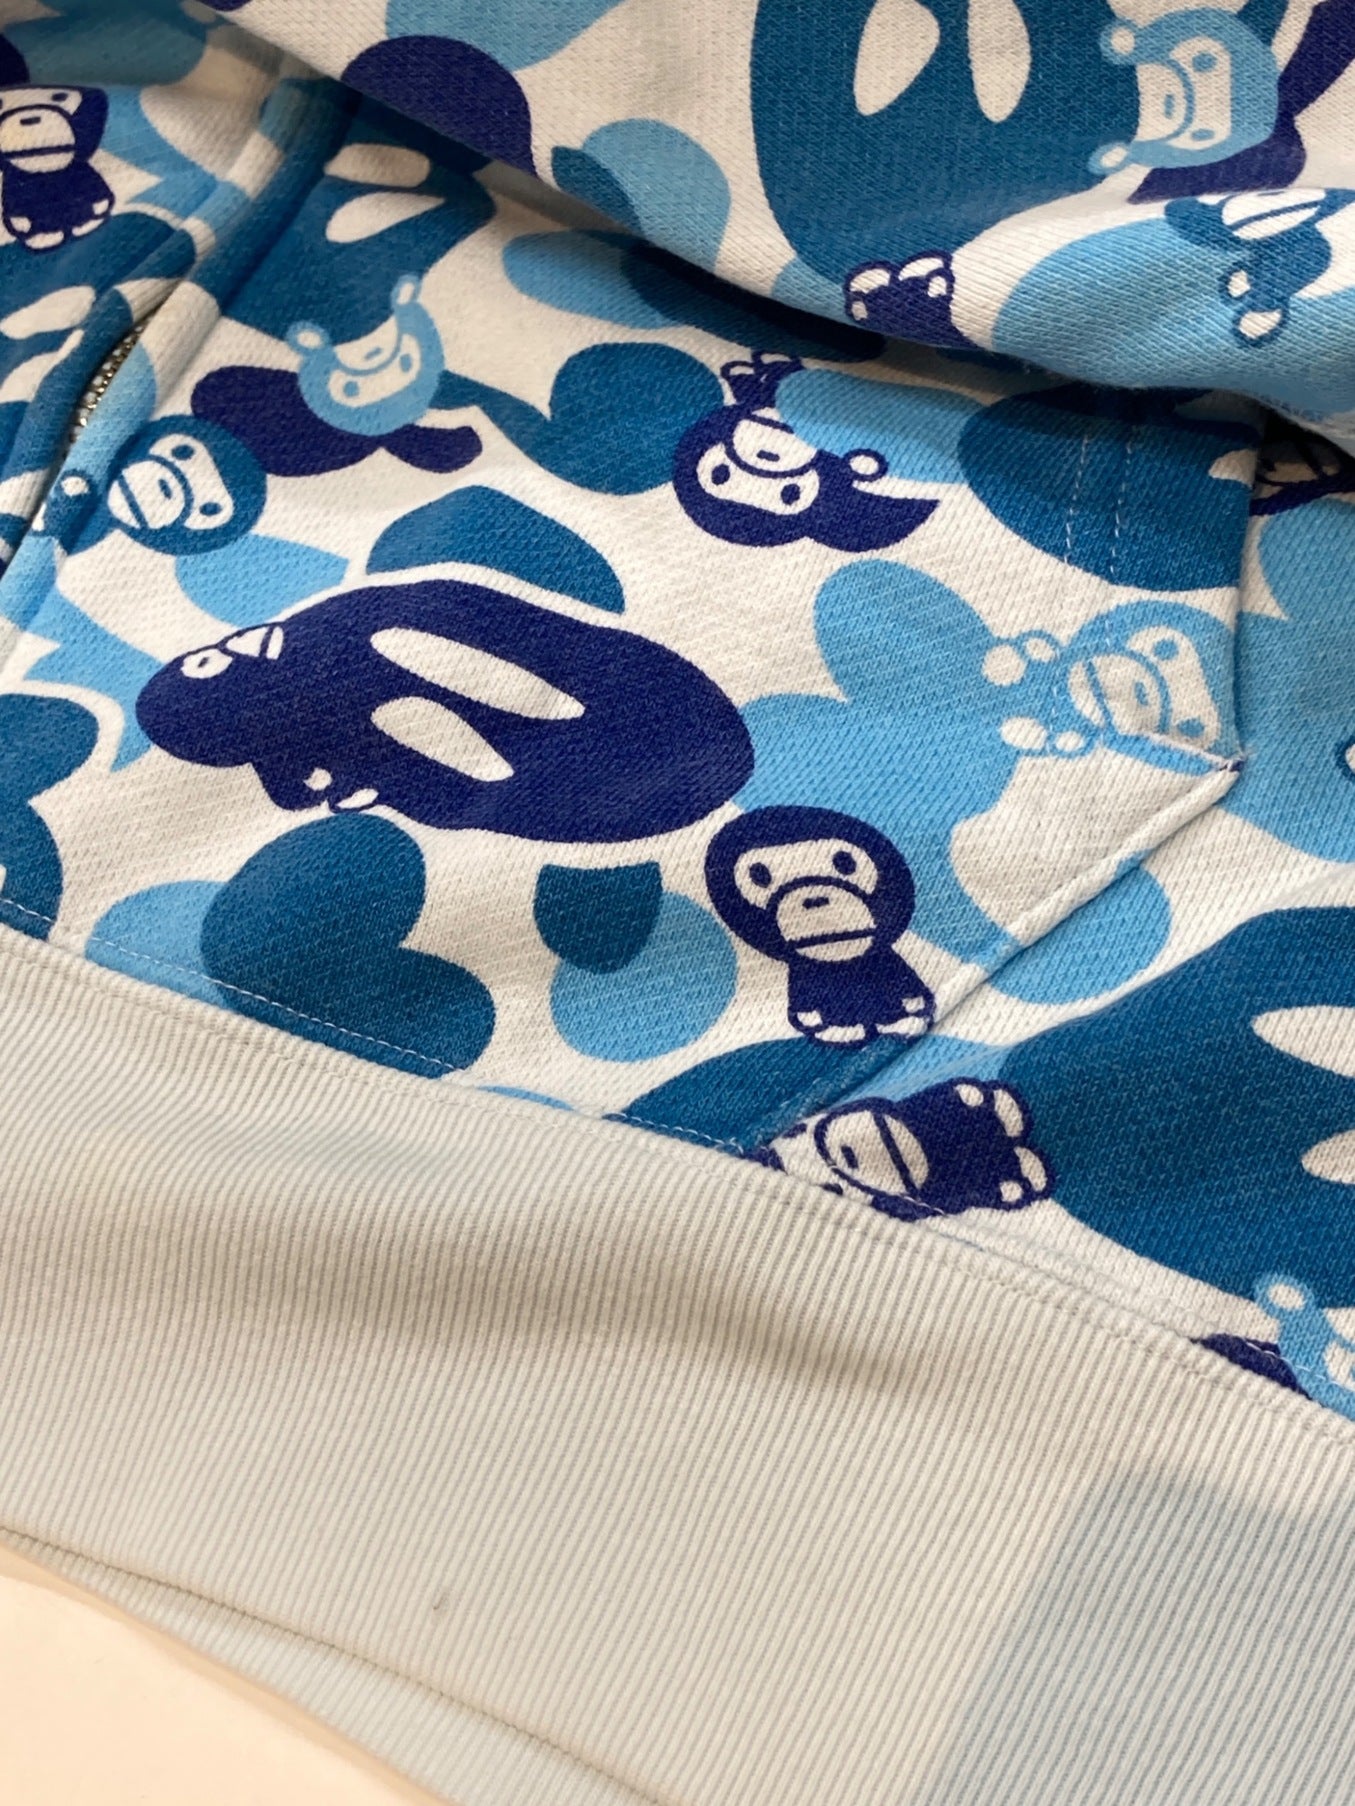 목욕 원숭이 밀로 블루 카모 풀 지퍼 까마귀 1860-115-028